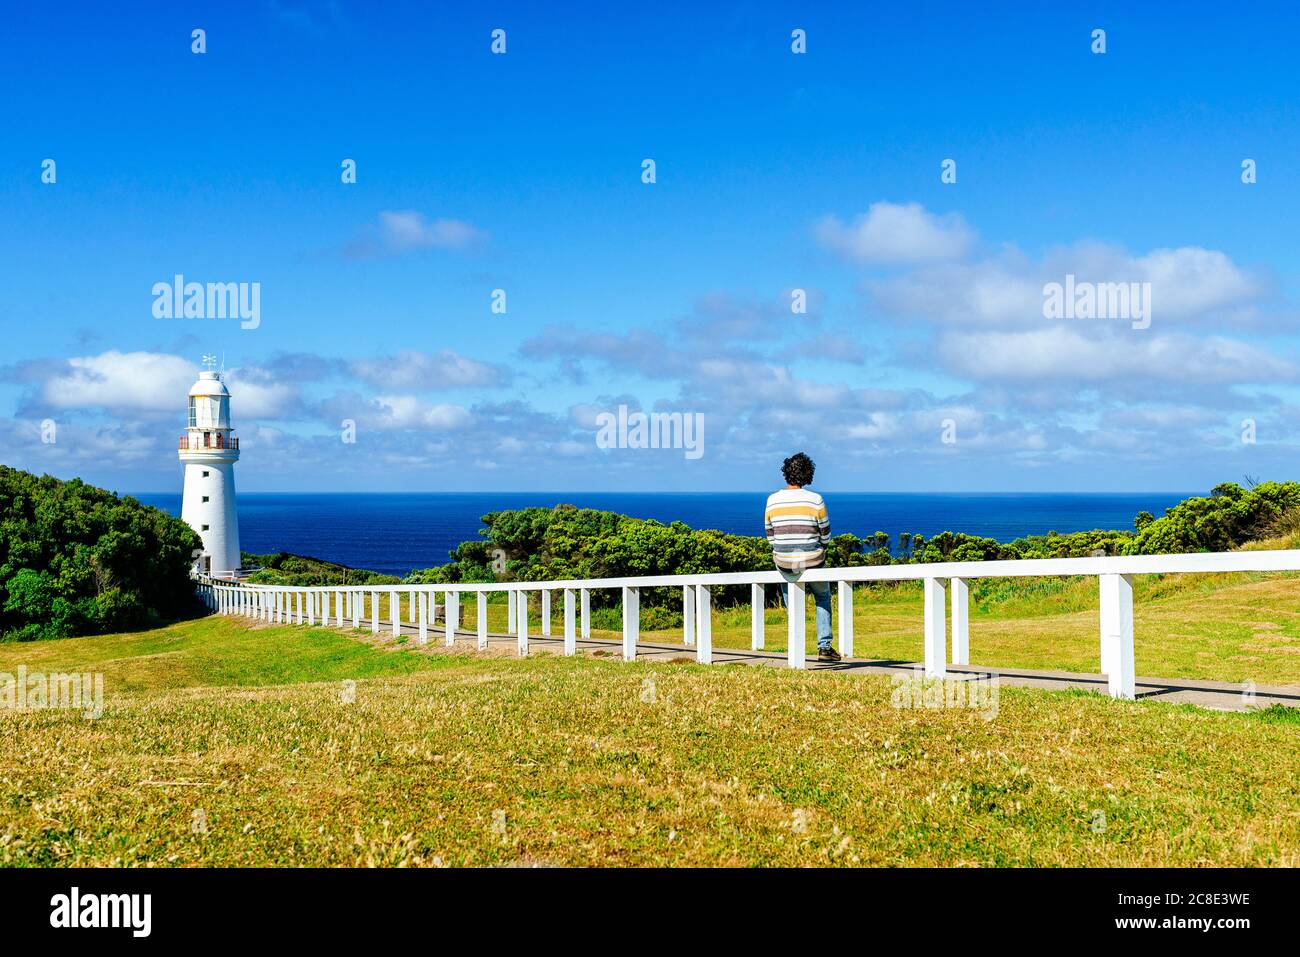 Mann auf Geländer gegen blauen Himmel, Cape Otway, Victoria, Australien Stockfoto